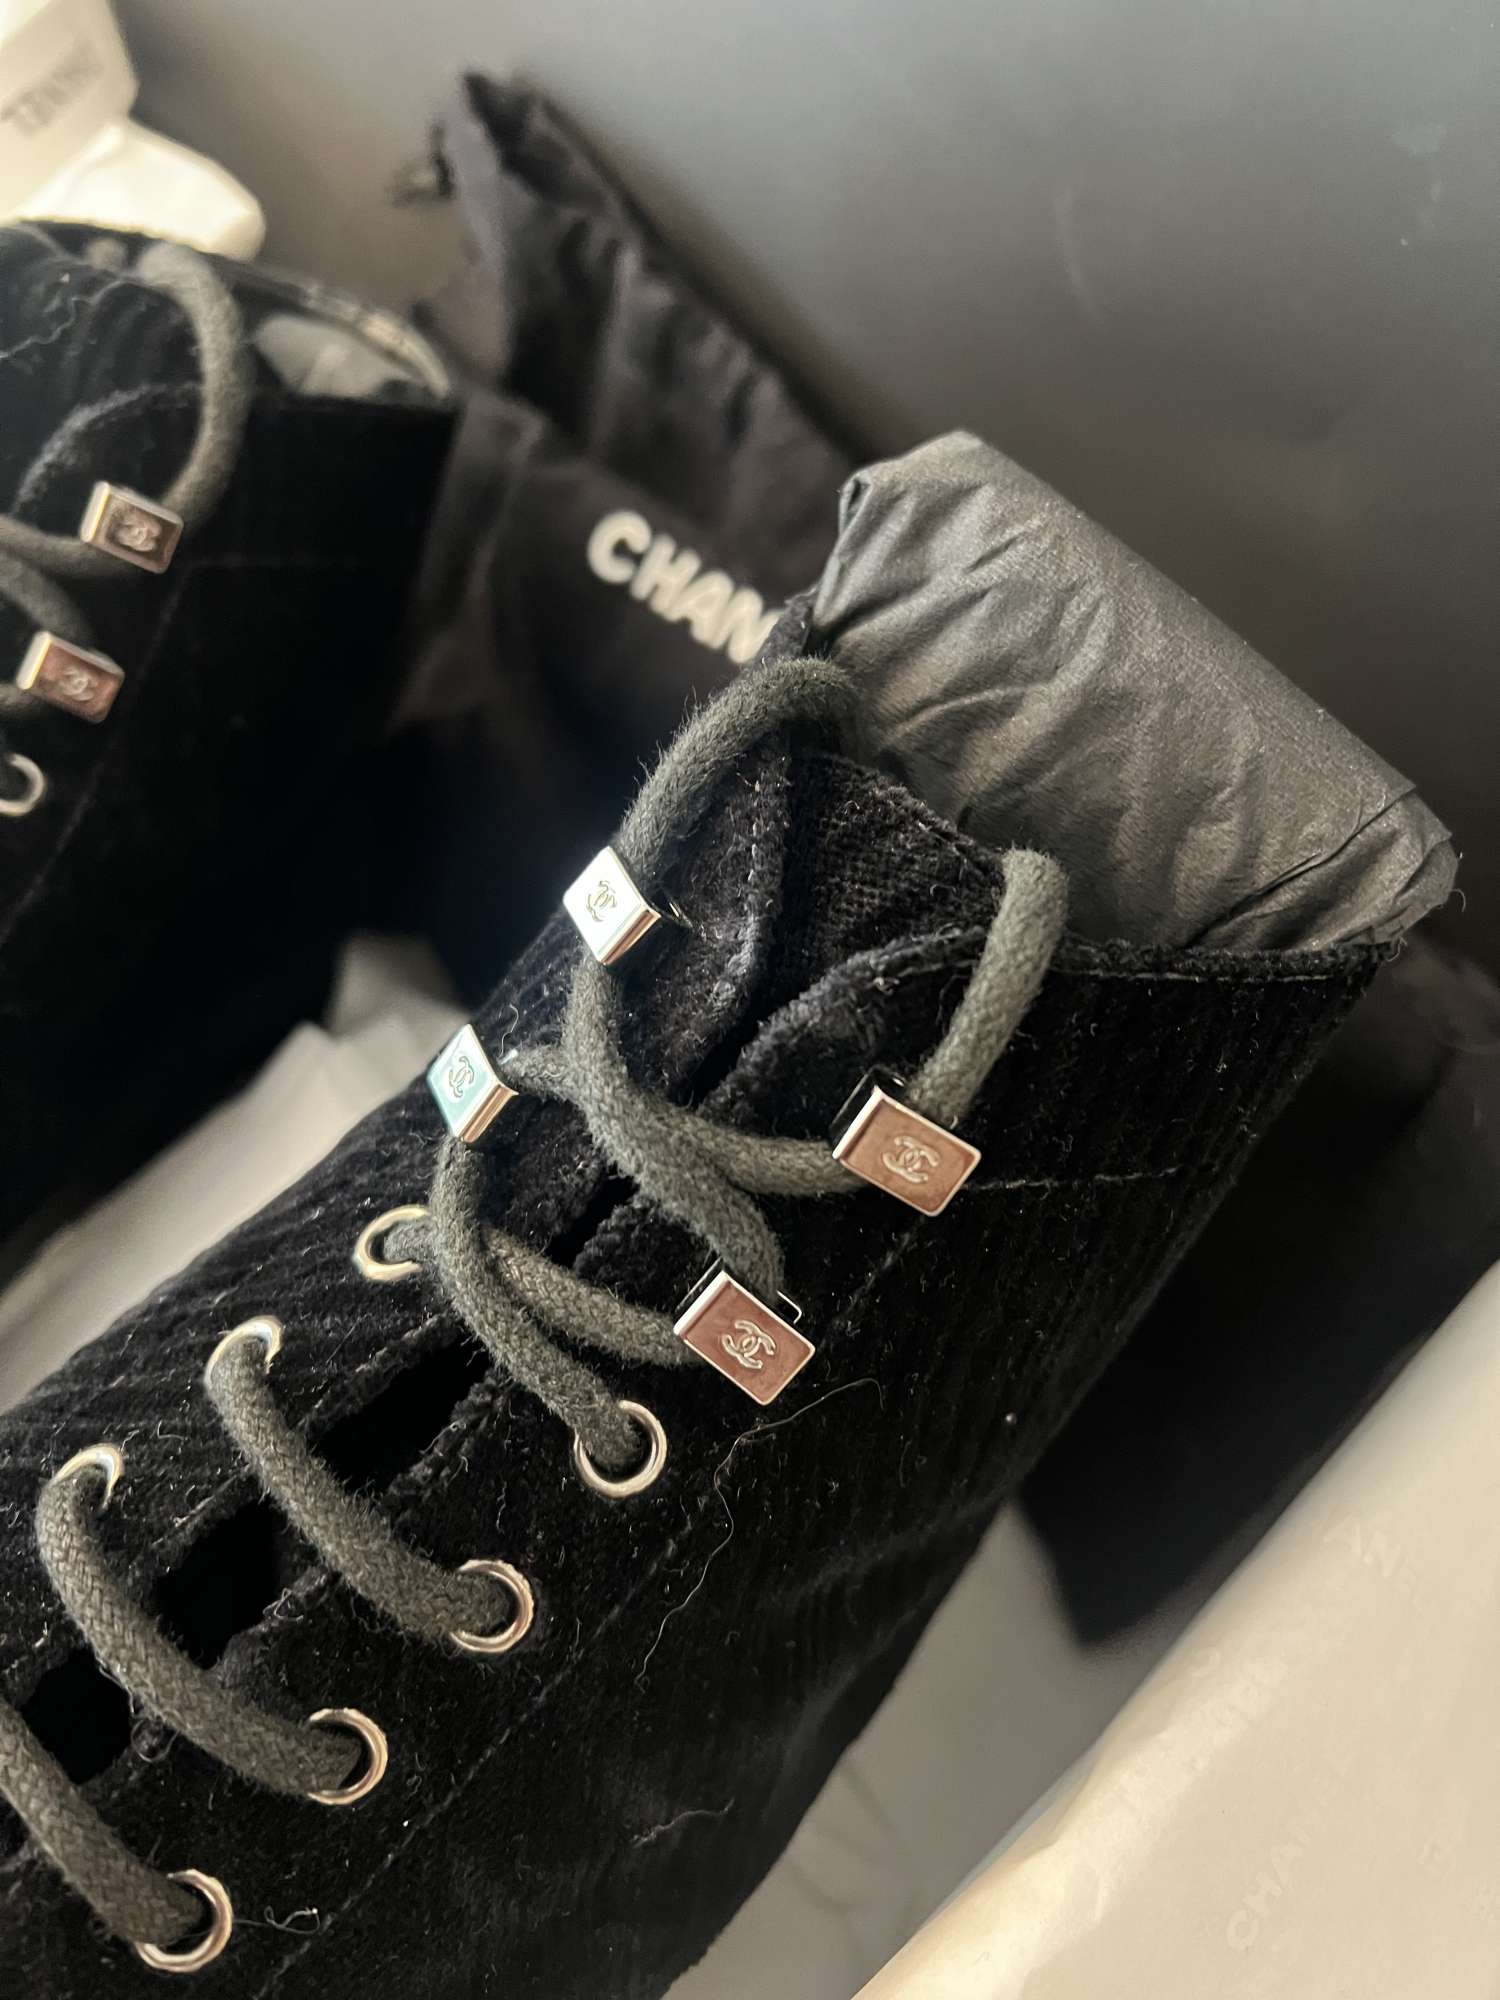 Chanel semišové čižmy